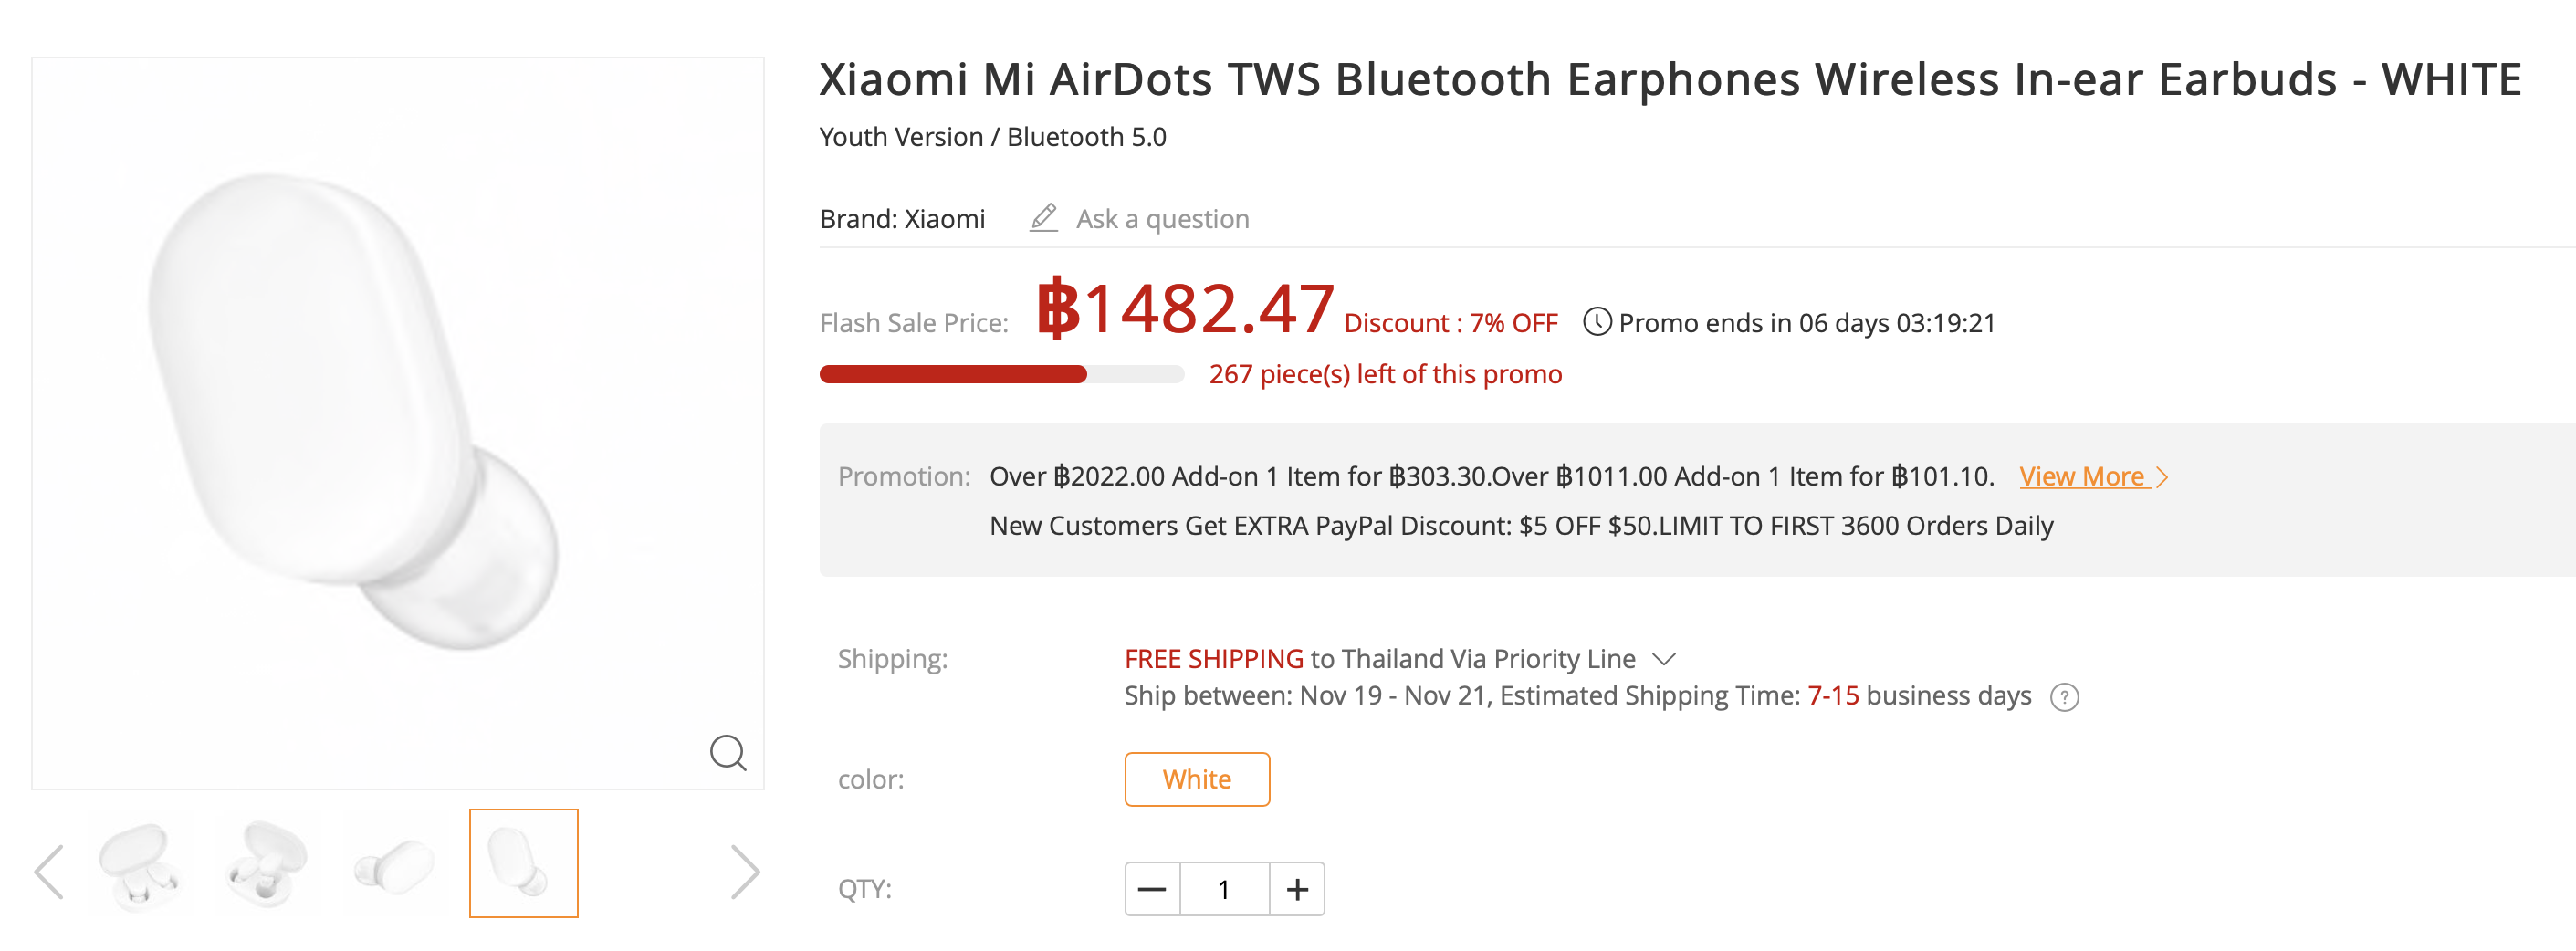 Xiaomi Mi AirDots TWS Bluetooth Earphones Wireless In-ear Earbuds